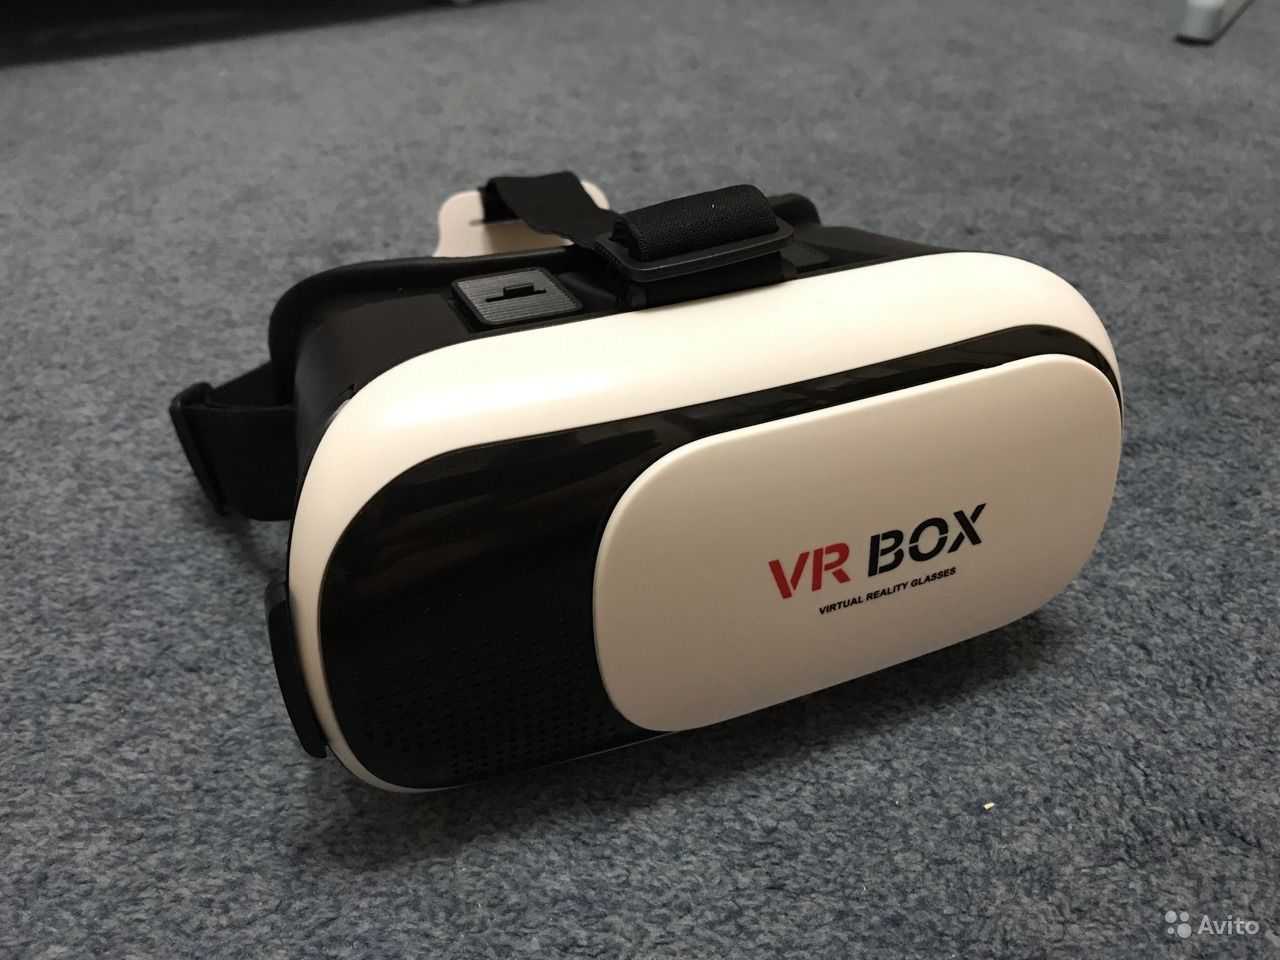 Homido hvr 01: обзор, отзывы и порядок цен на очки виртуальной реальности | vr-journal